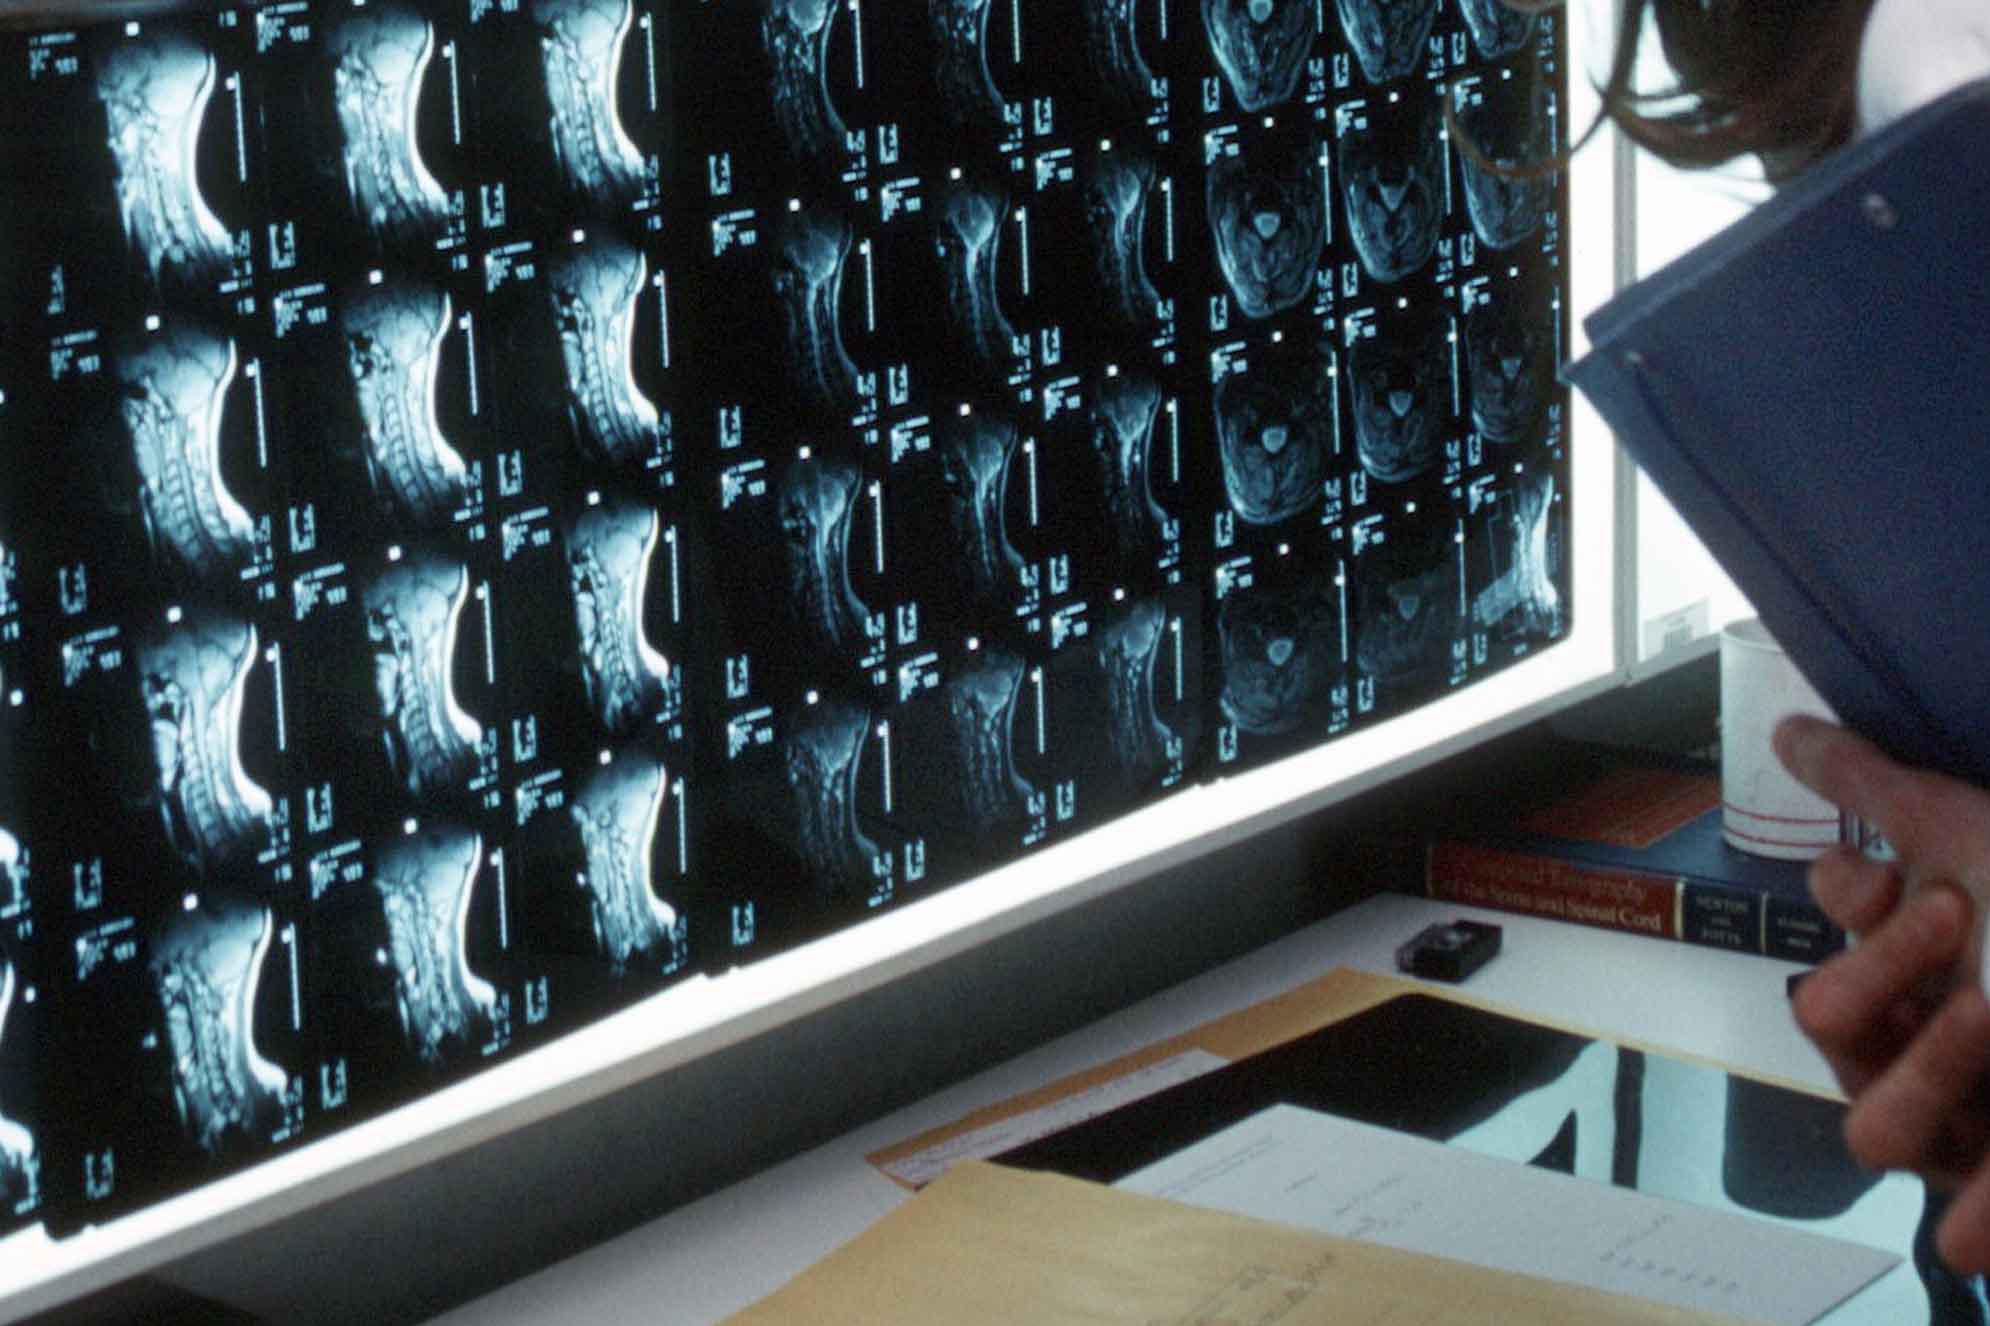 esami di radiografia da risonanza magnetica o tac local caption examens de radiographie scanner